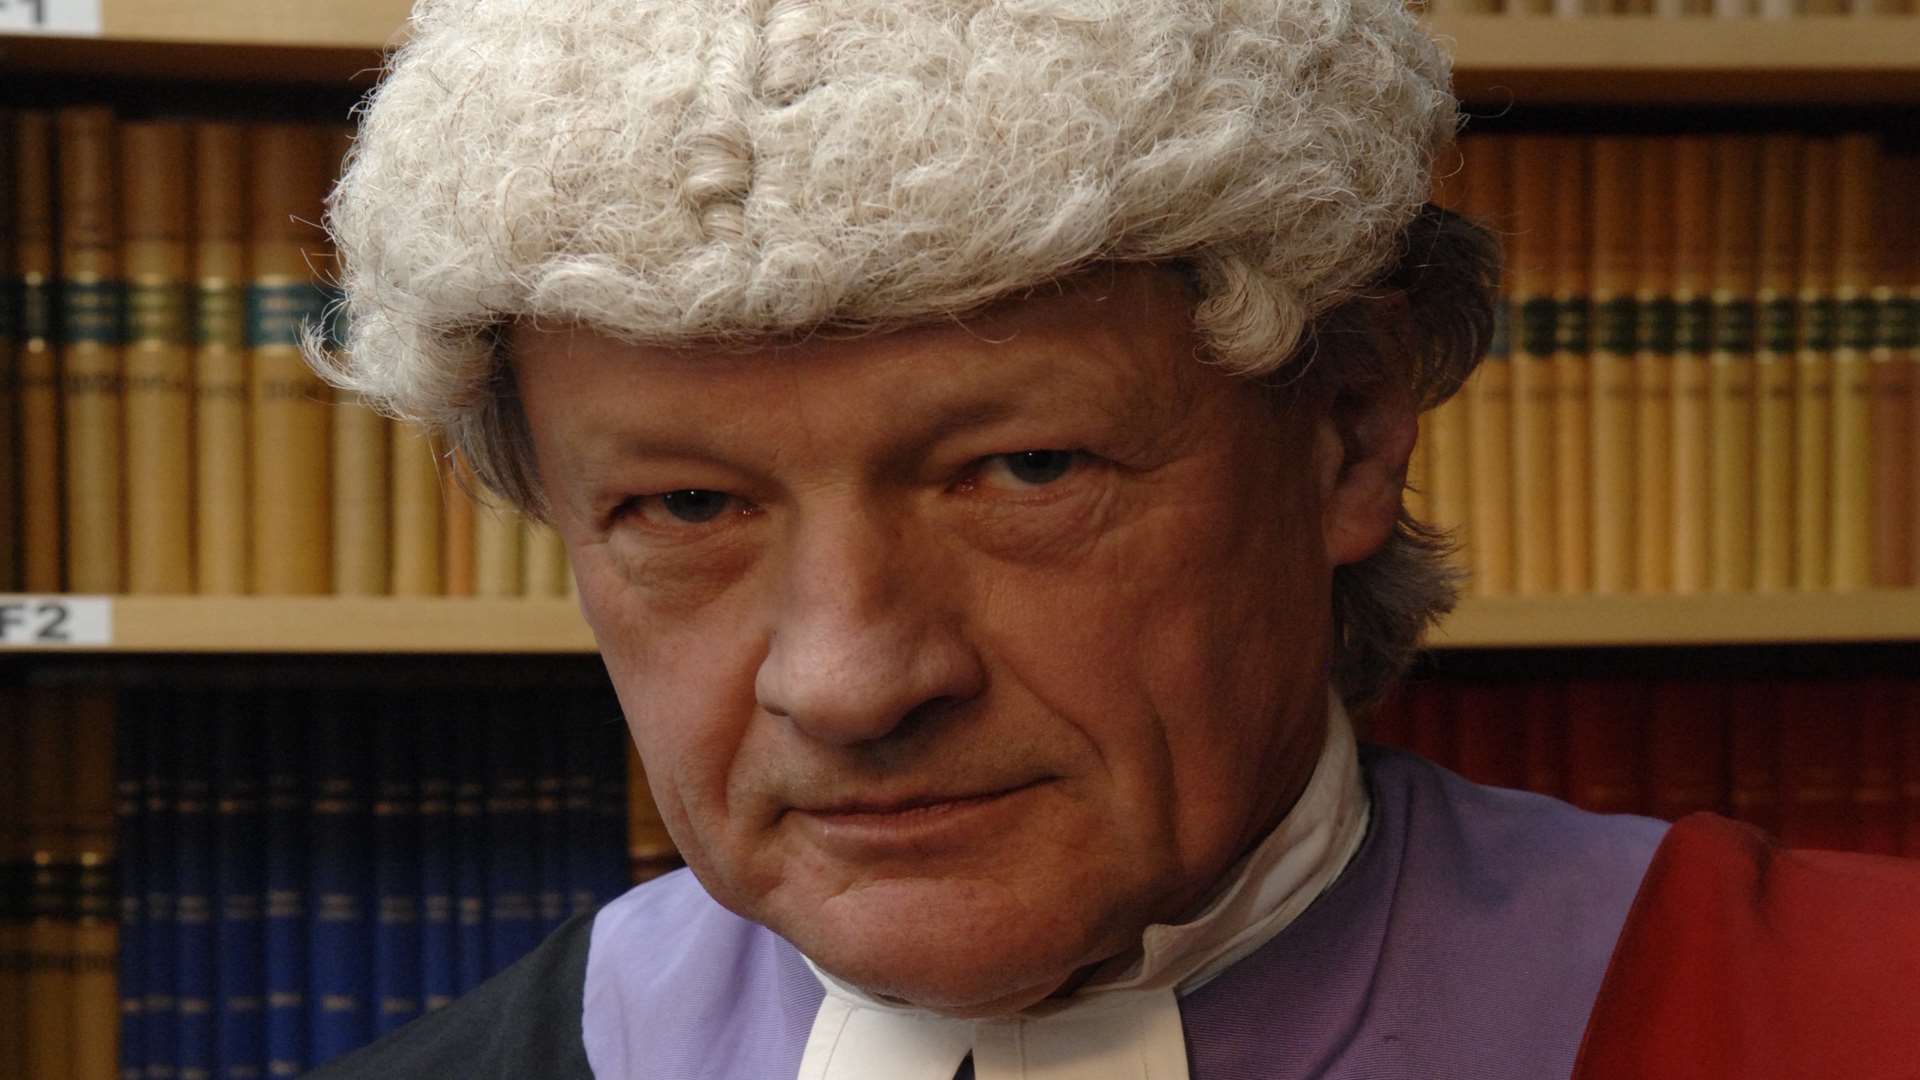 His Honour Judge James O'Mahony